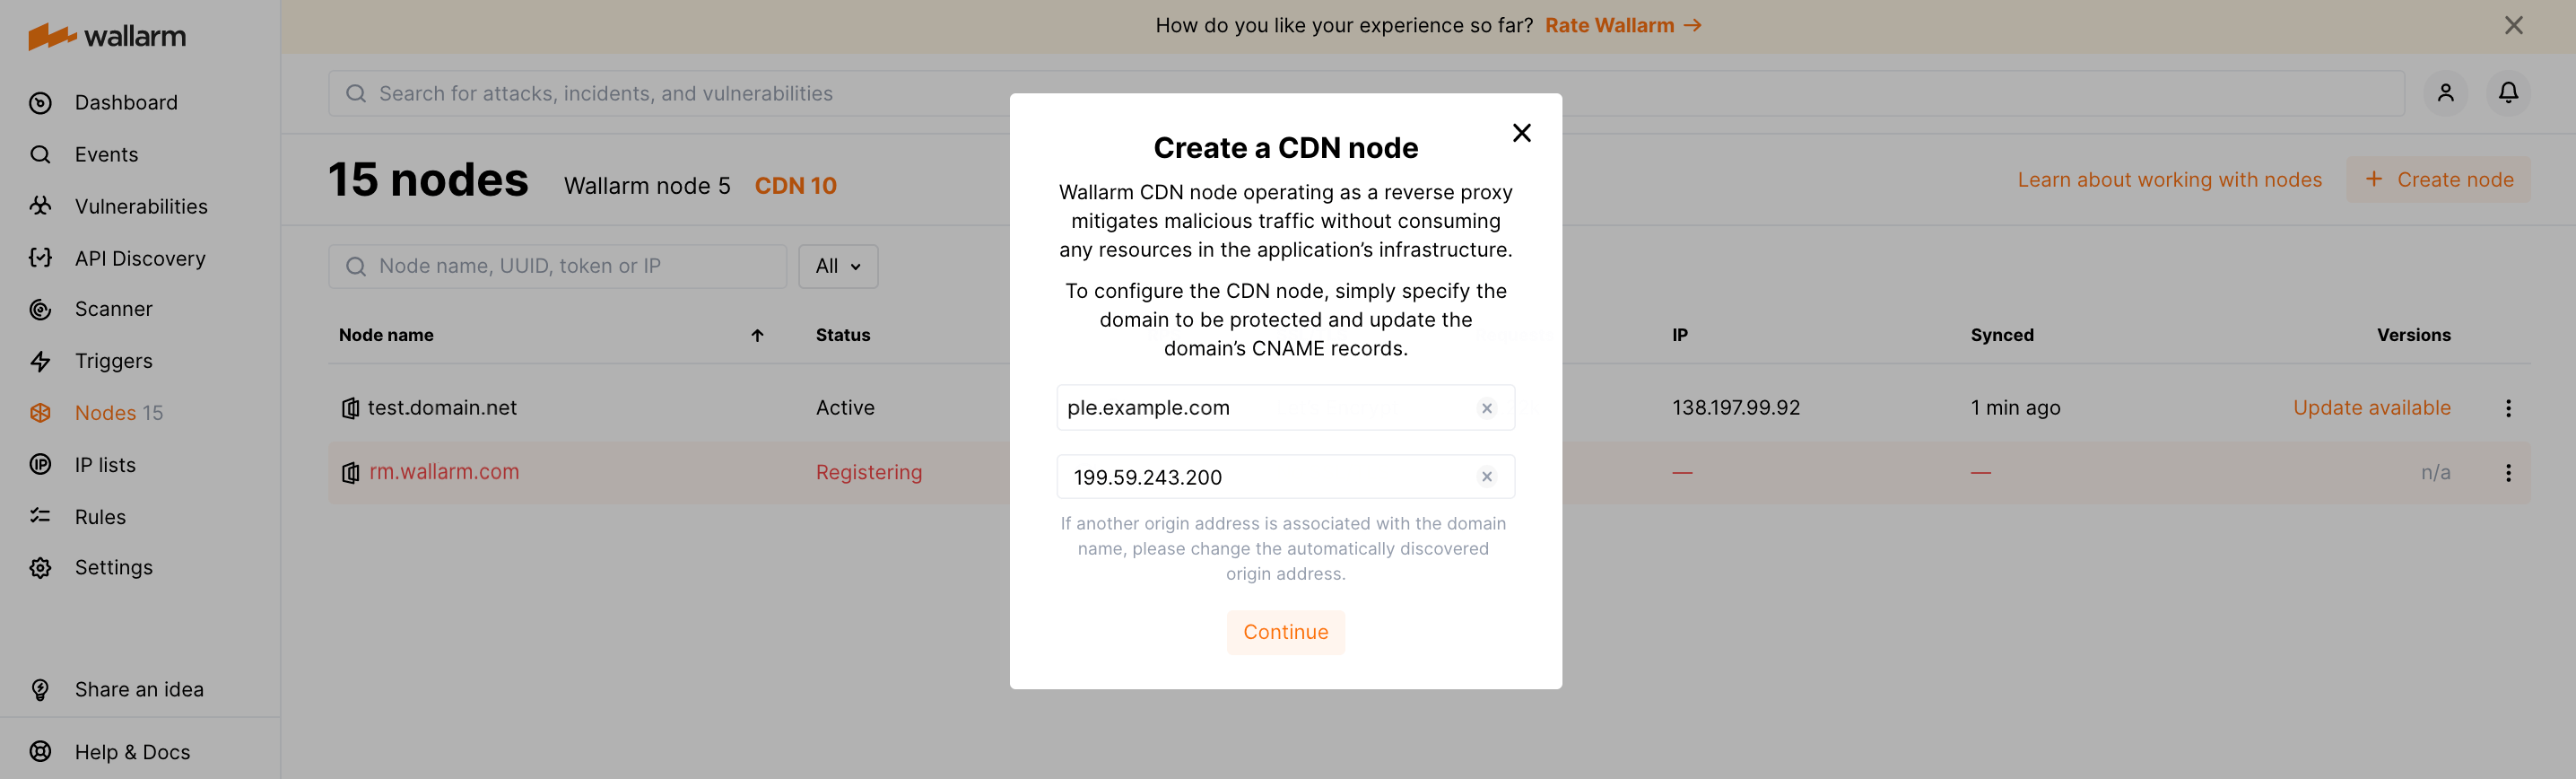 CDN node creation modal